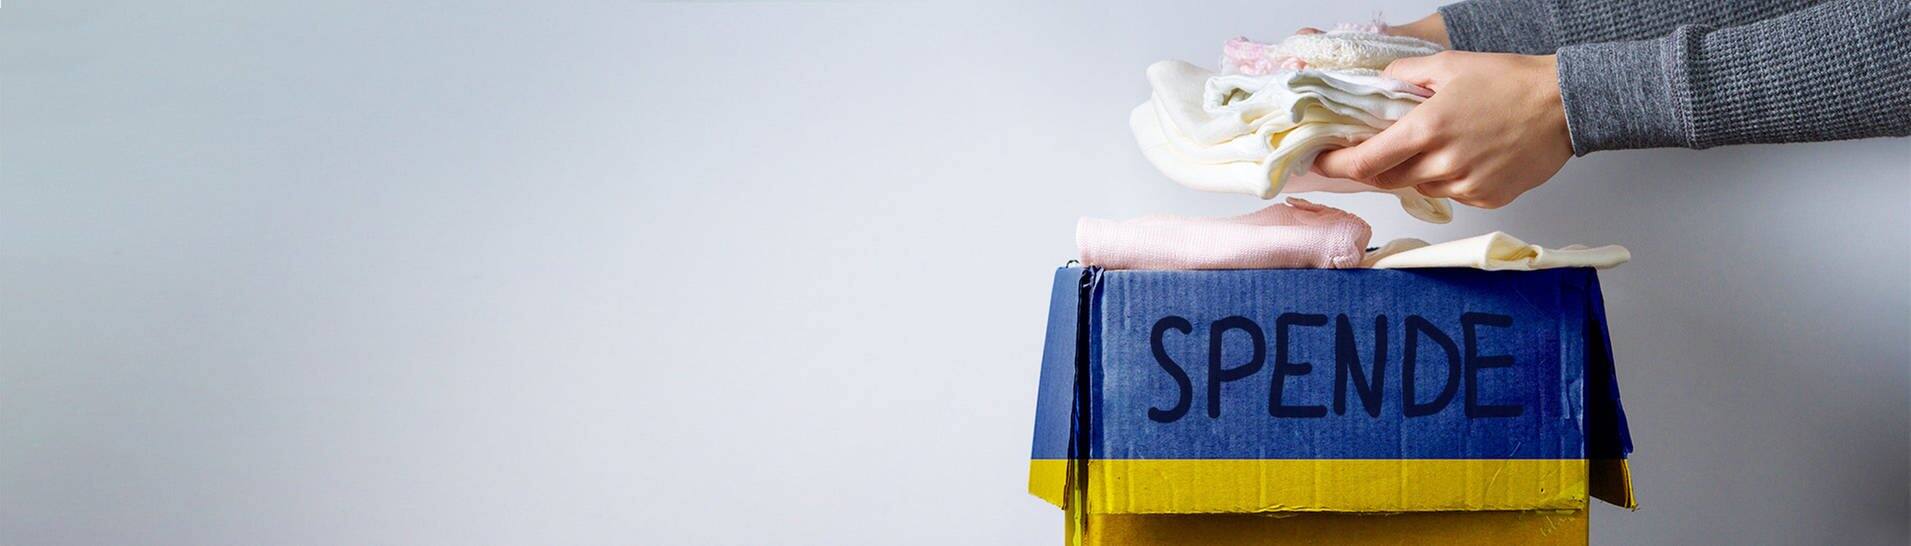 Karton mit der Aufschrift "Spende", jemand stapelt Kleidung hinein zur Hilfe für die Ukraine (Foto: Adobe Stock/Goffkein)